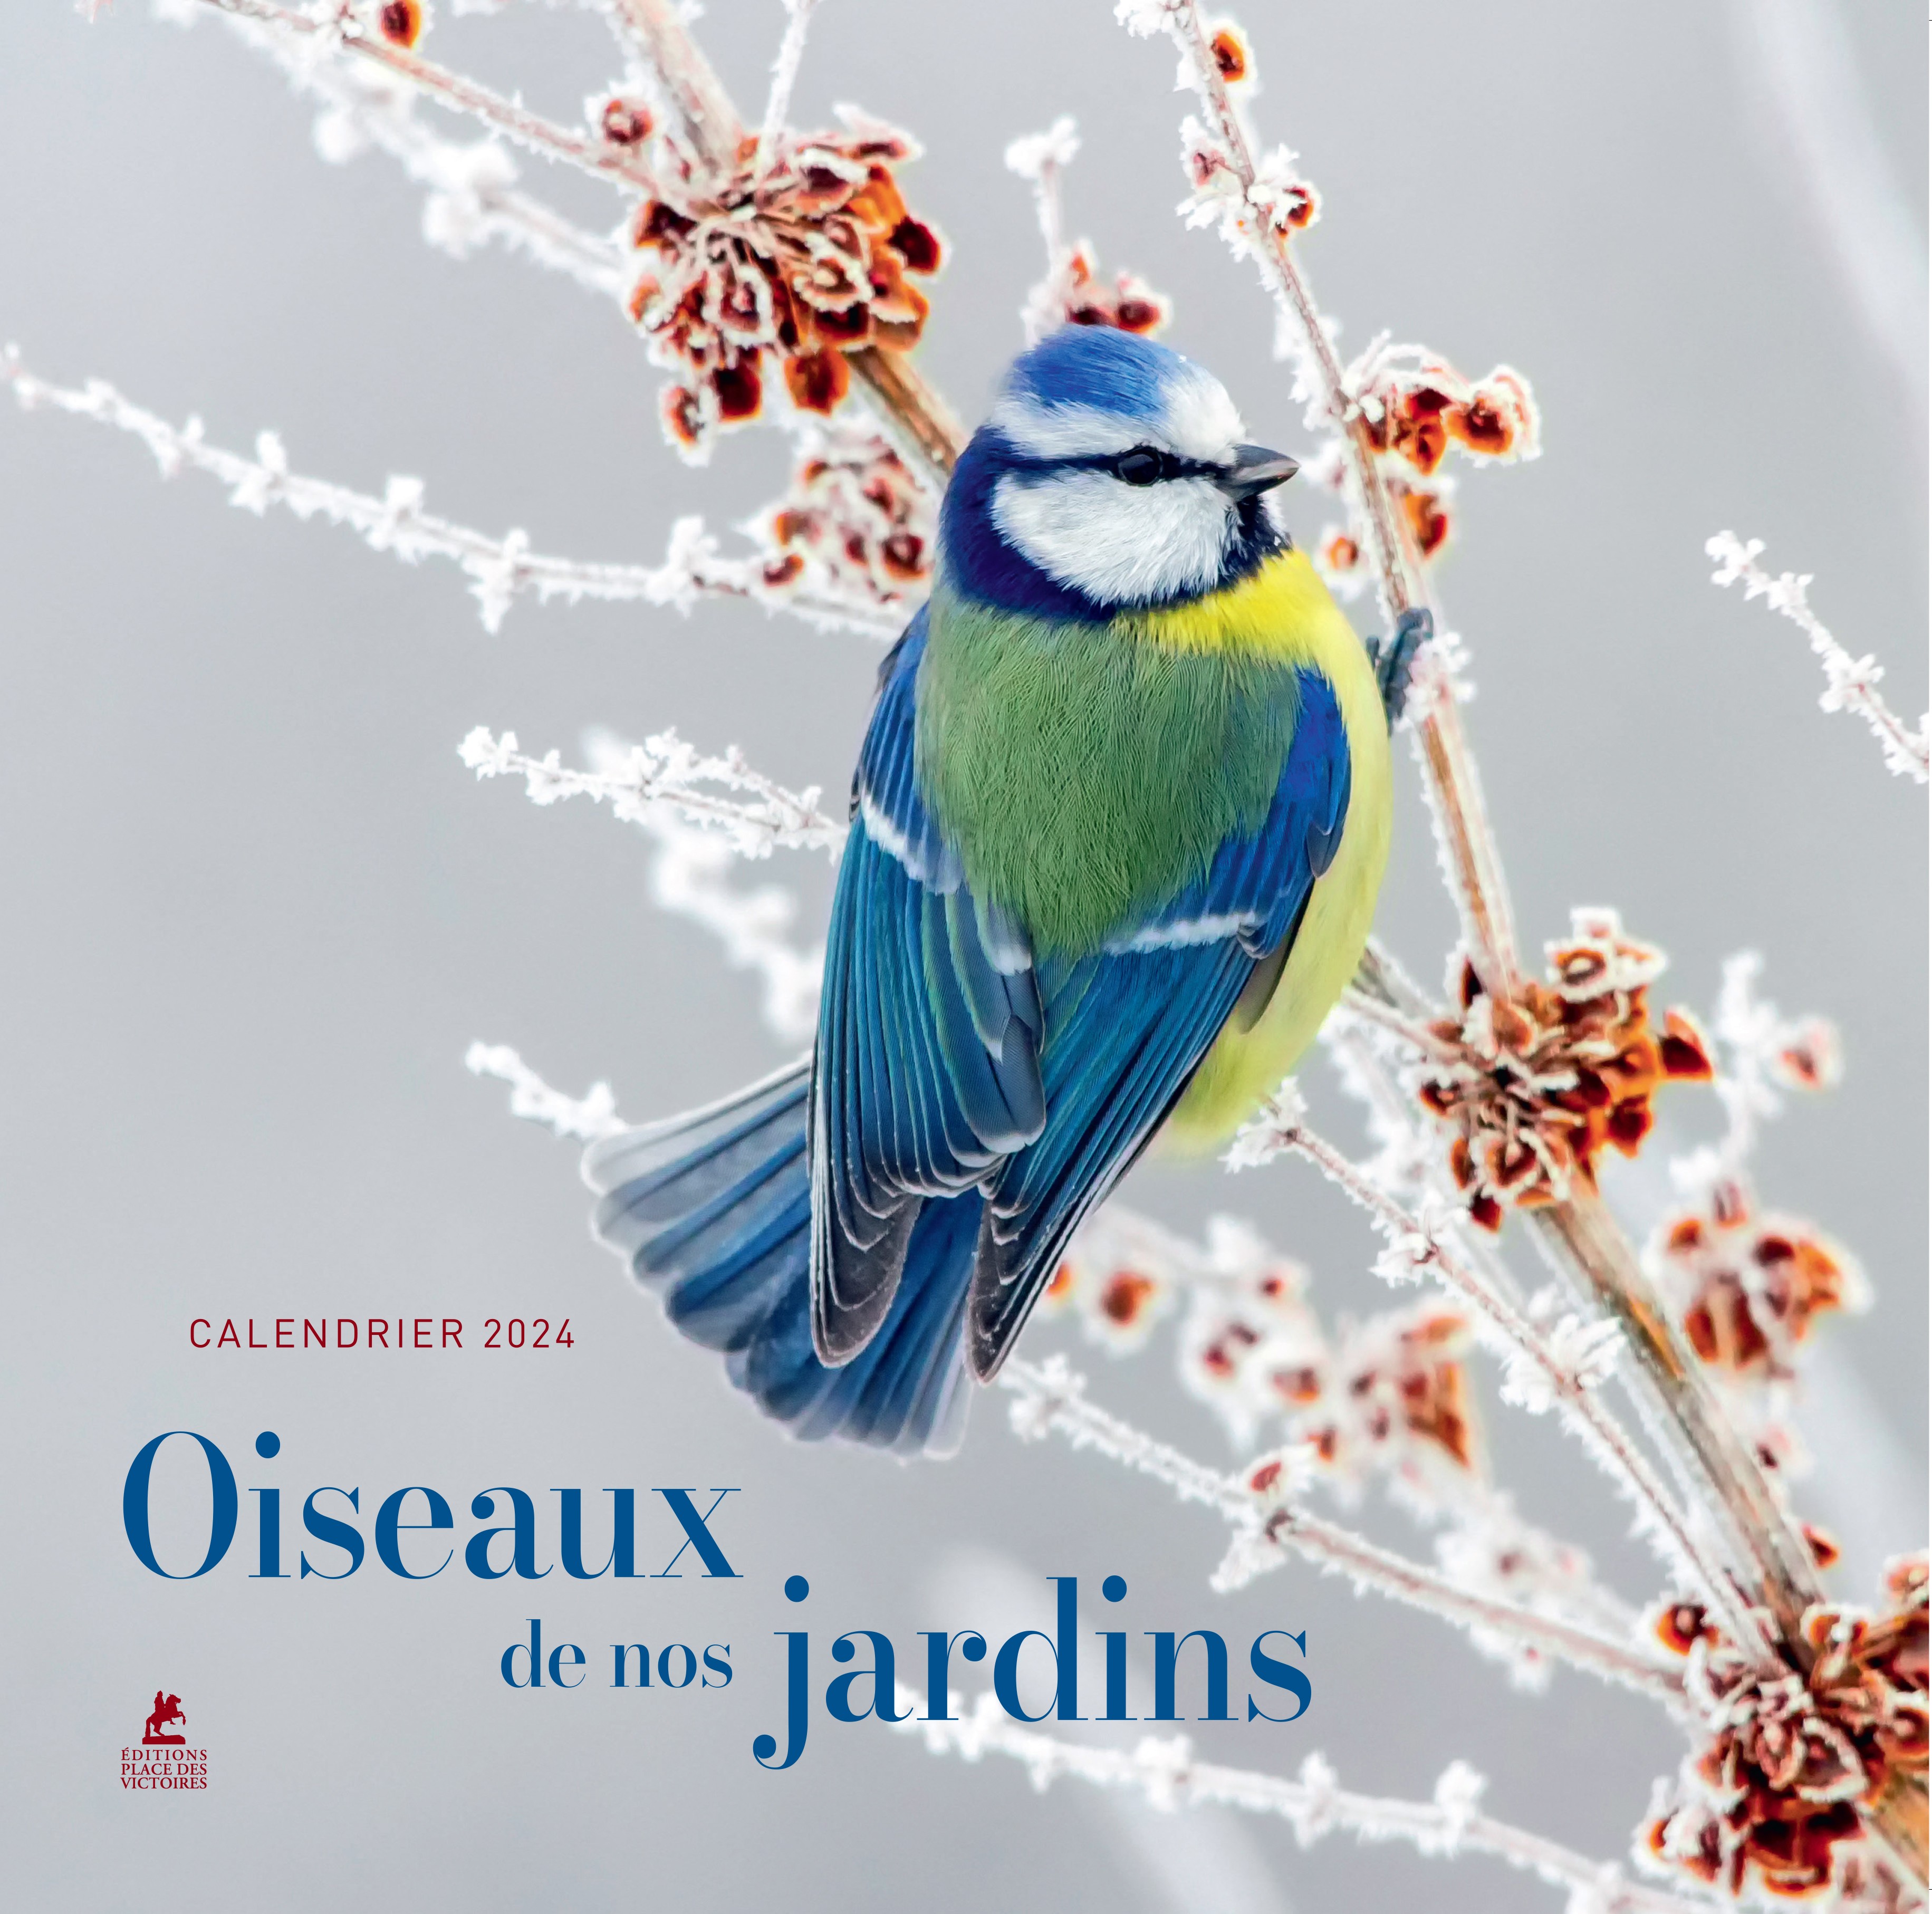 Calendrier mural Oiseaux du monde. Edition 2024 - COLLECTIF